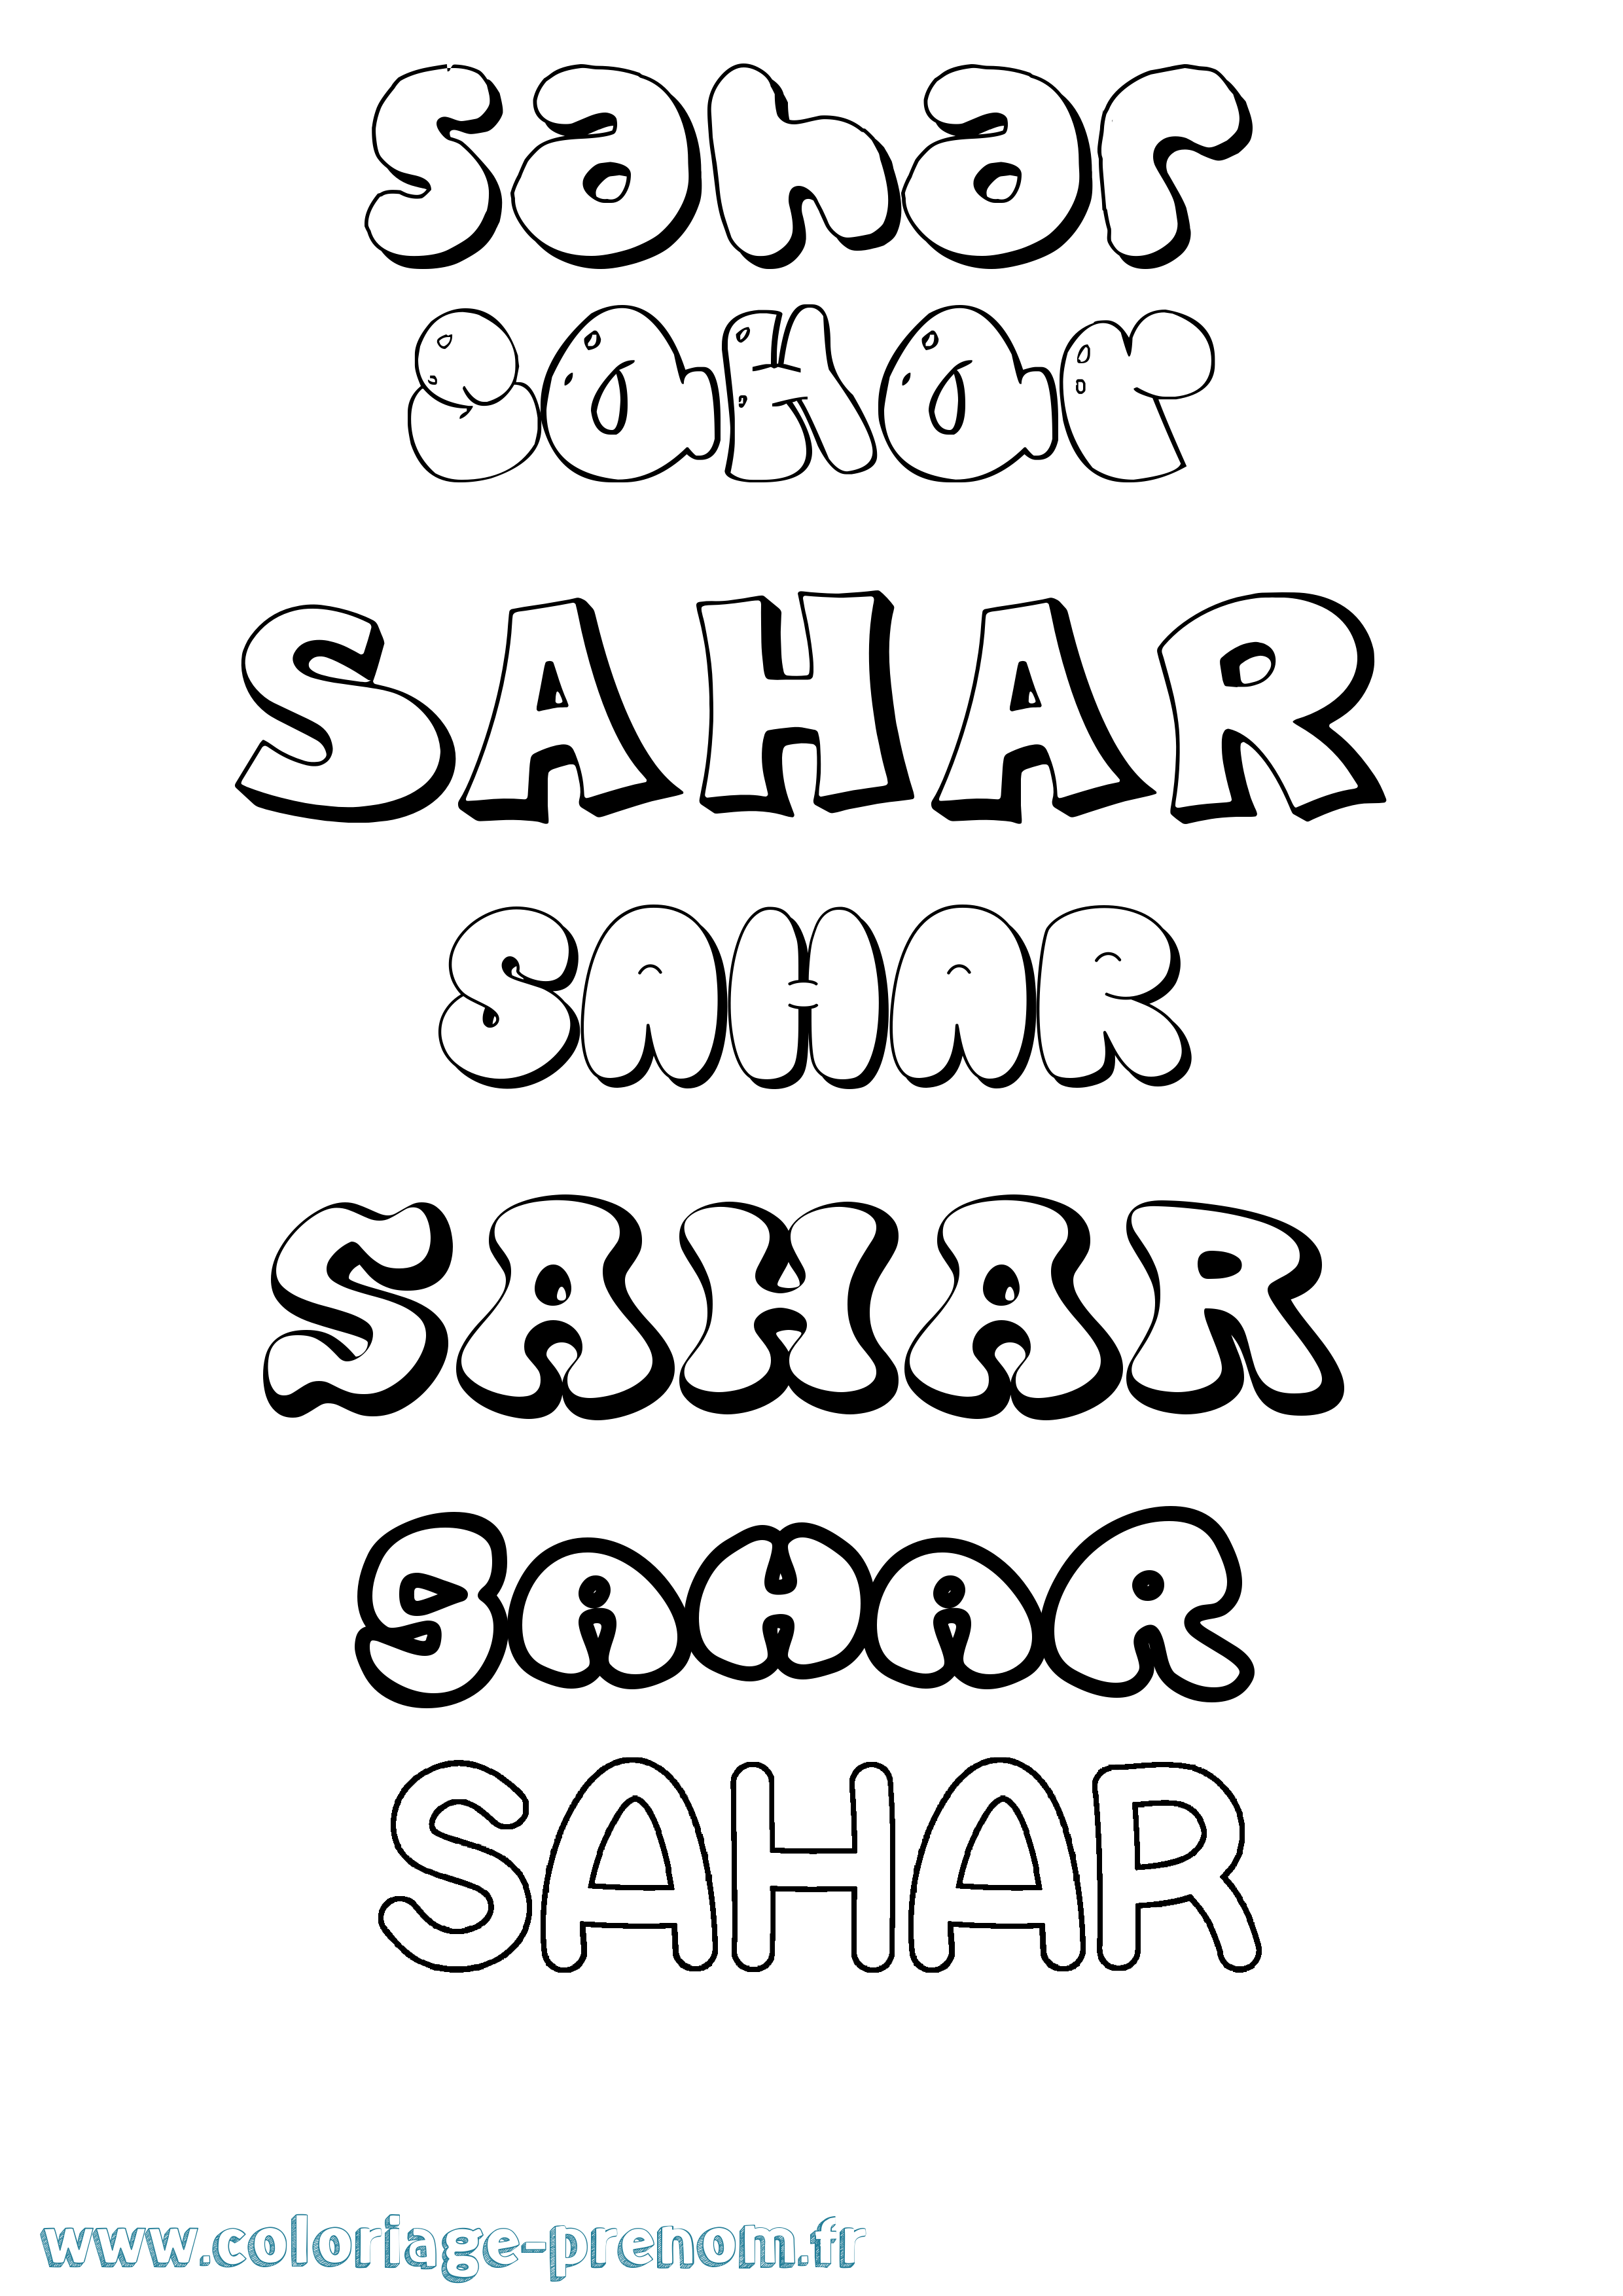 Coloriage prénom Sahar Bubble